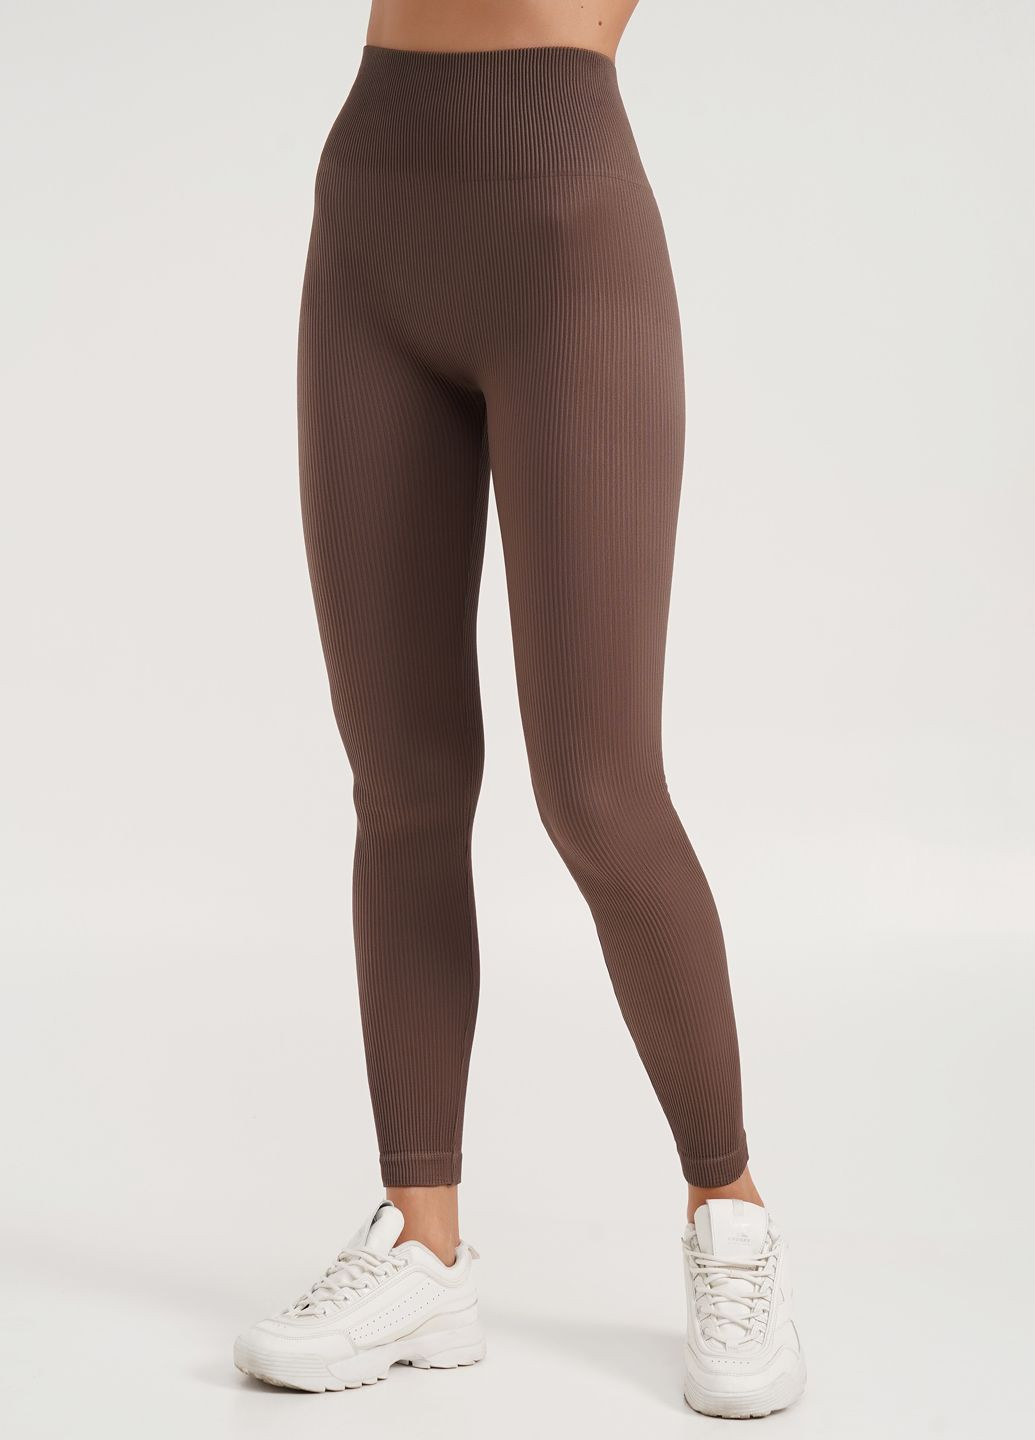 Коричневые демисезонные леггинсы в рубчик с моделирующим швом сзади leggings rib (deep taupe-s/m) коричневый Giulia